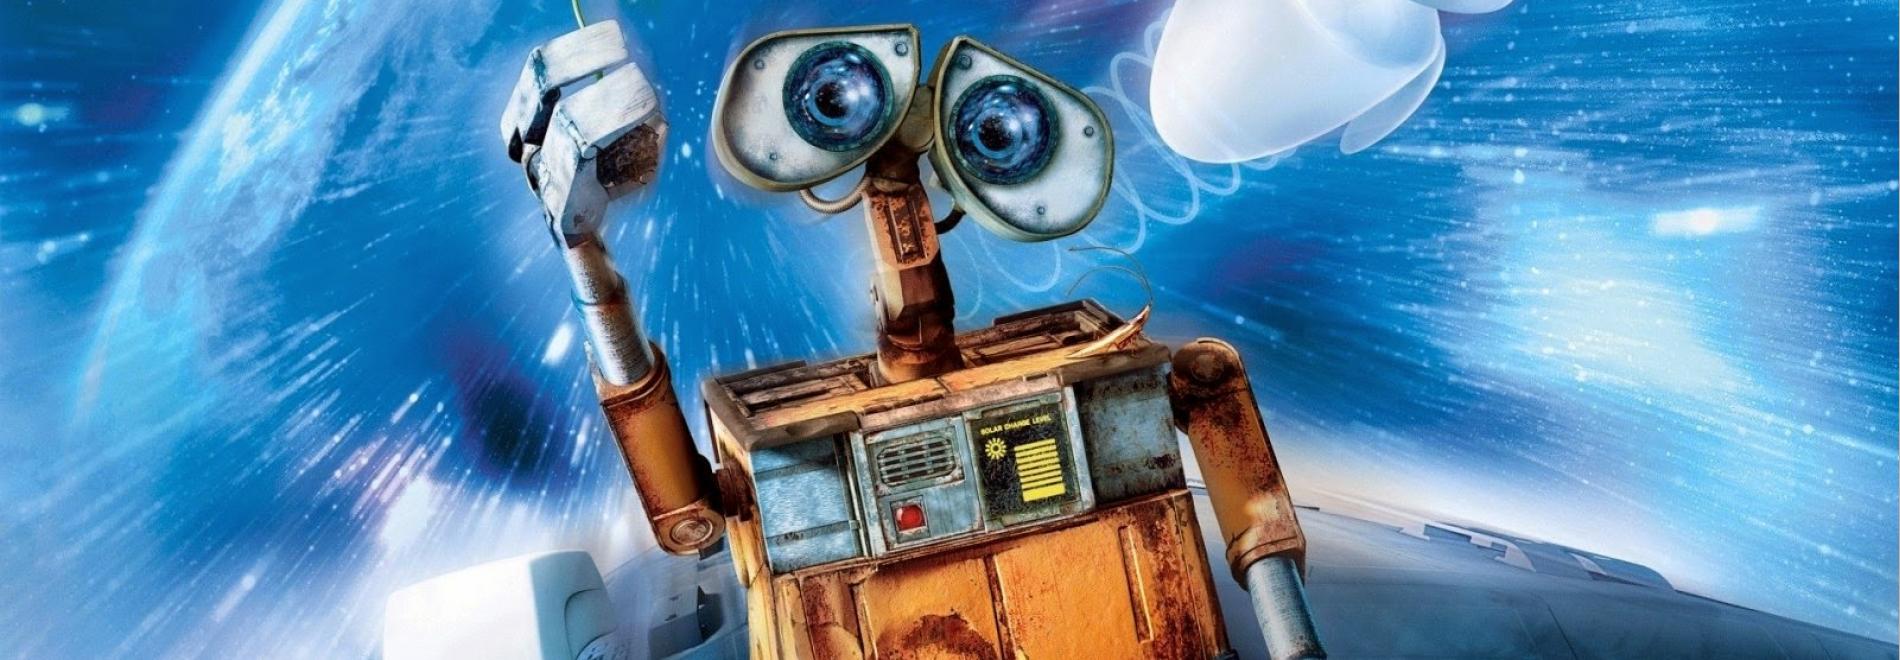 WALL-E. Batalló de neteja